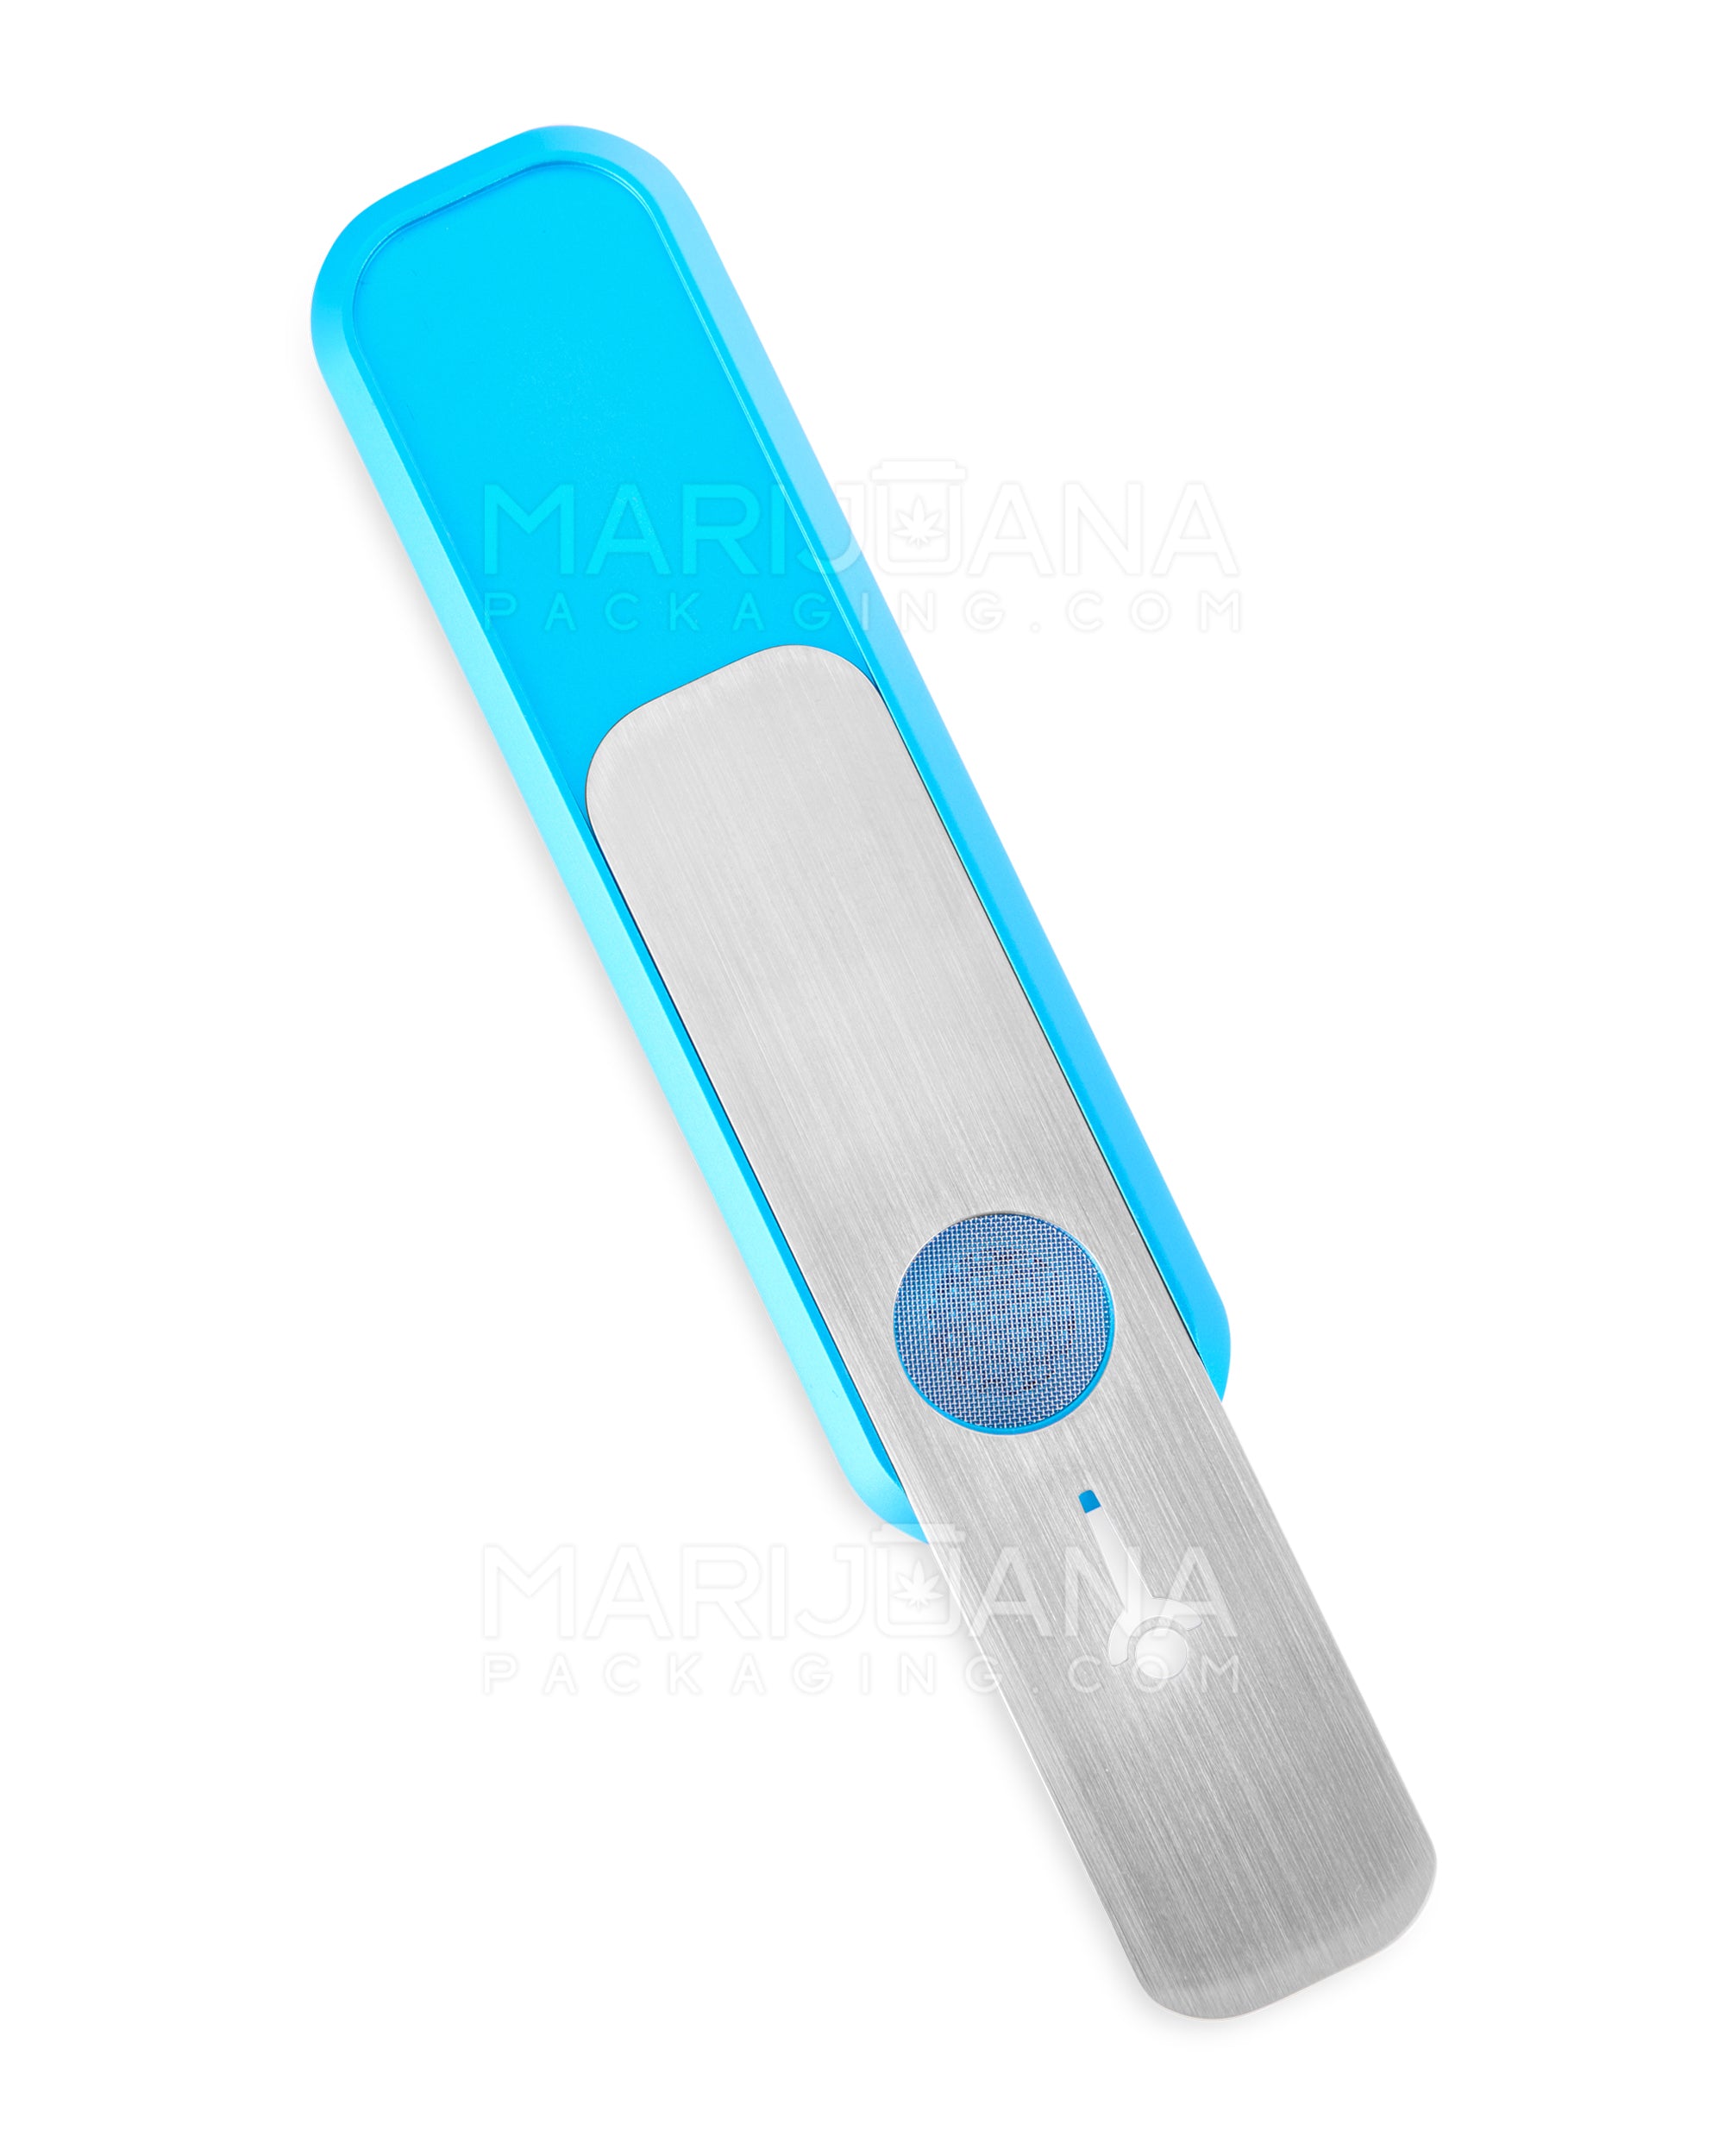 GENIUS PIPE | Mini Color Magnetic Slider Pipe | 5in Long - Metal - Blue - 4